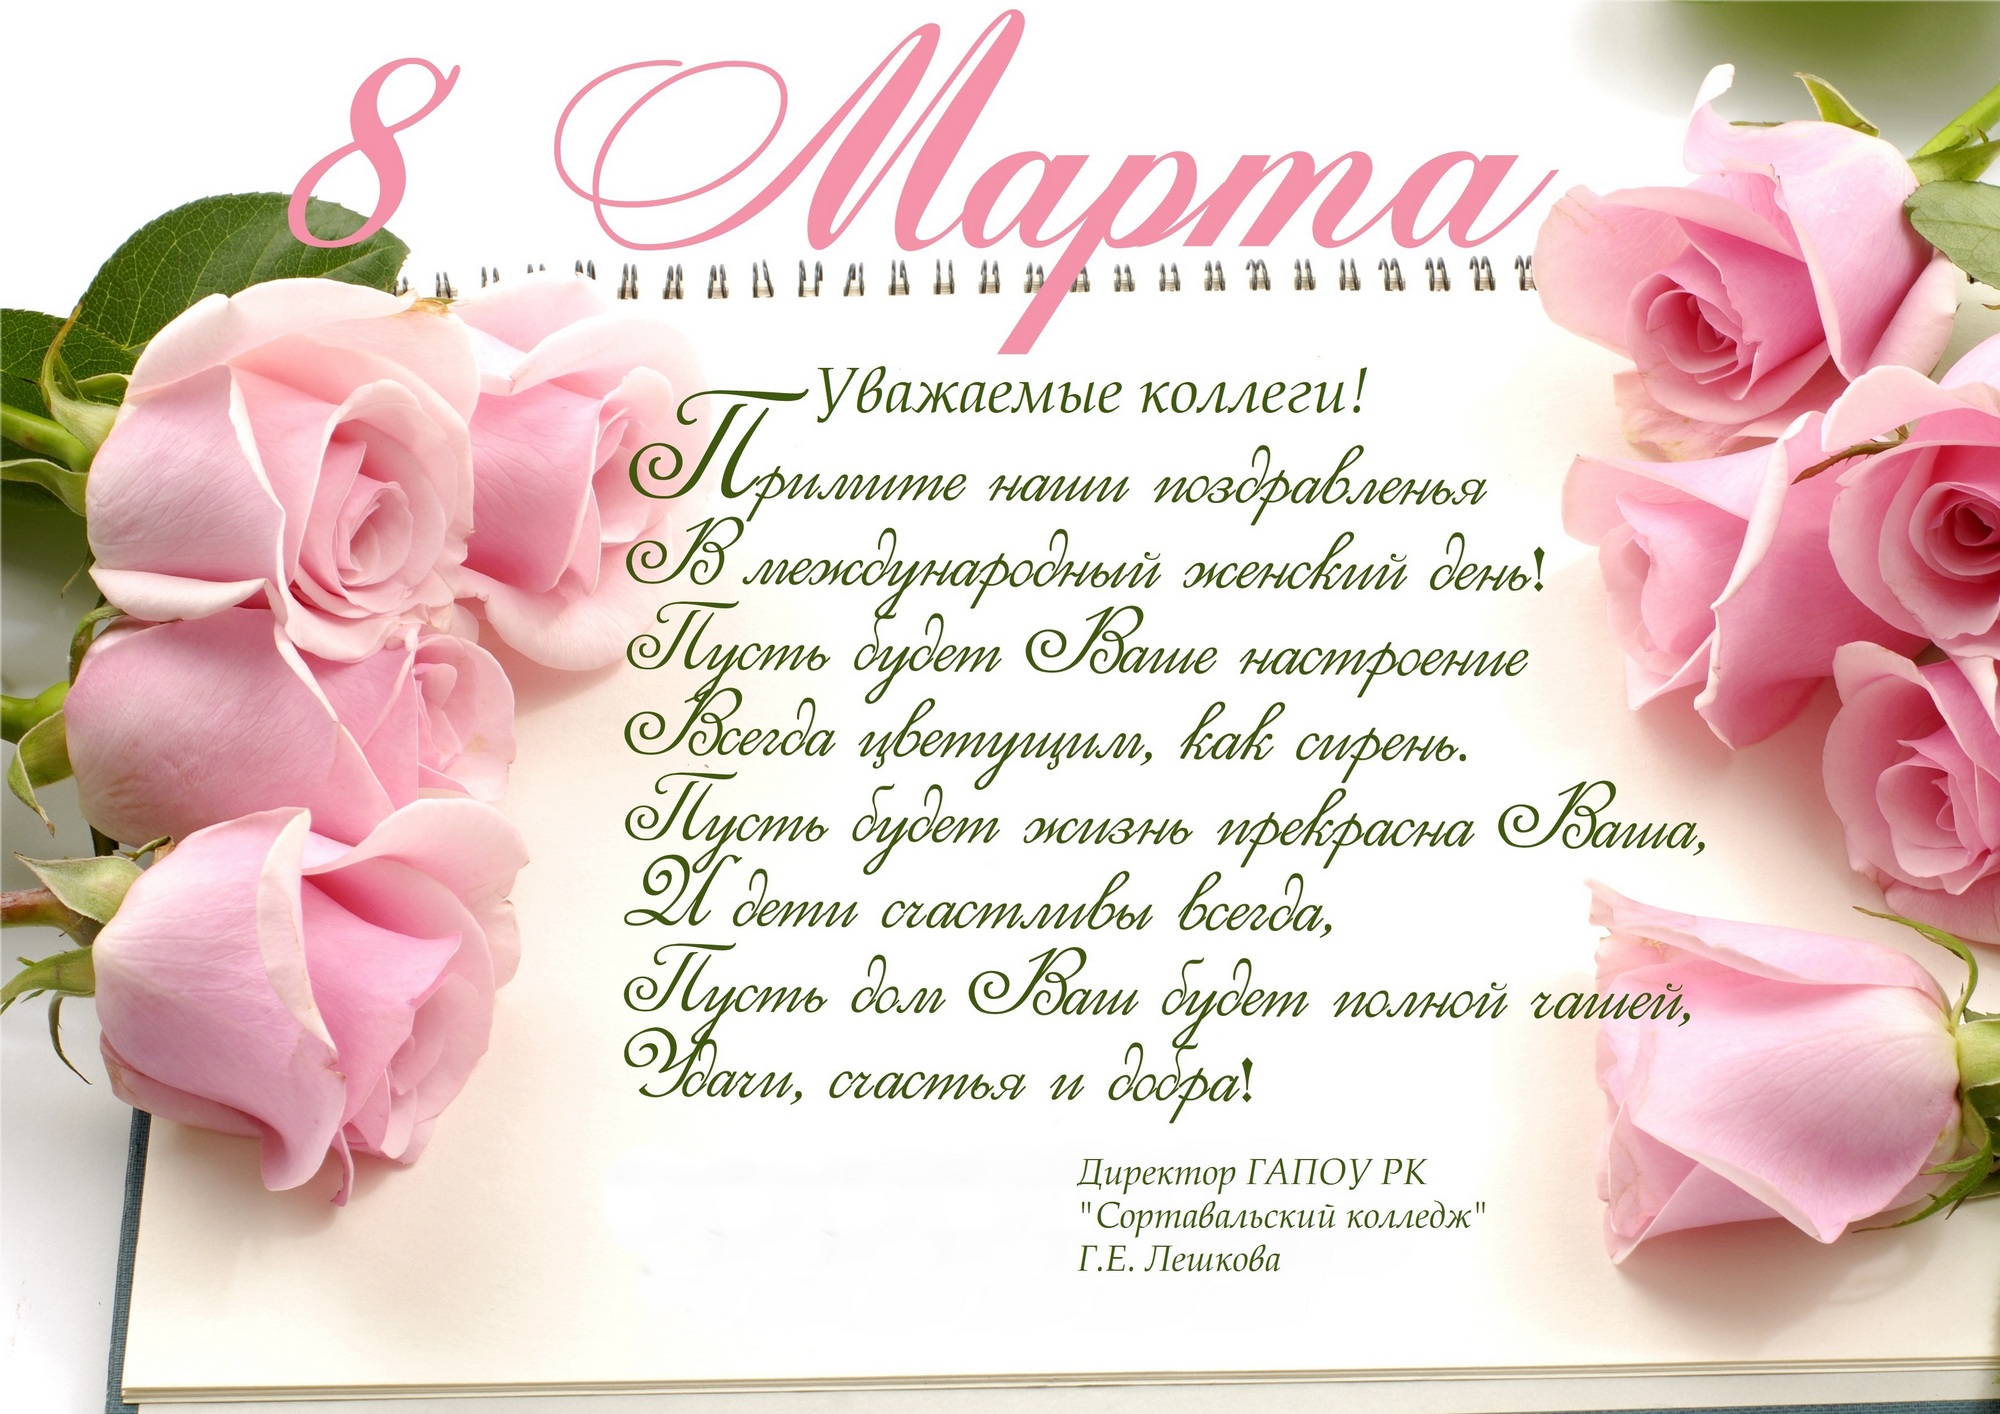 8 марта международный женский день окрытки с поздравлениями в стихах 8 марта международный женский день красивые открытки с цветами со стихами посвещённые празднику 8 марта для женщин с добрыми пожеланиями с атмосферой праздника 